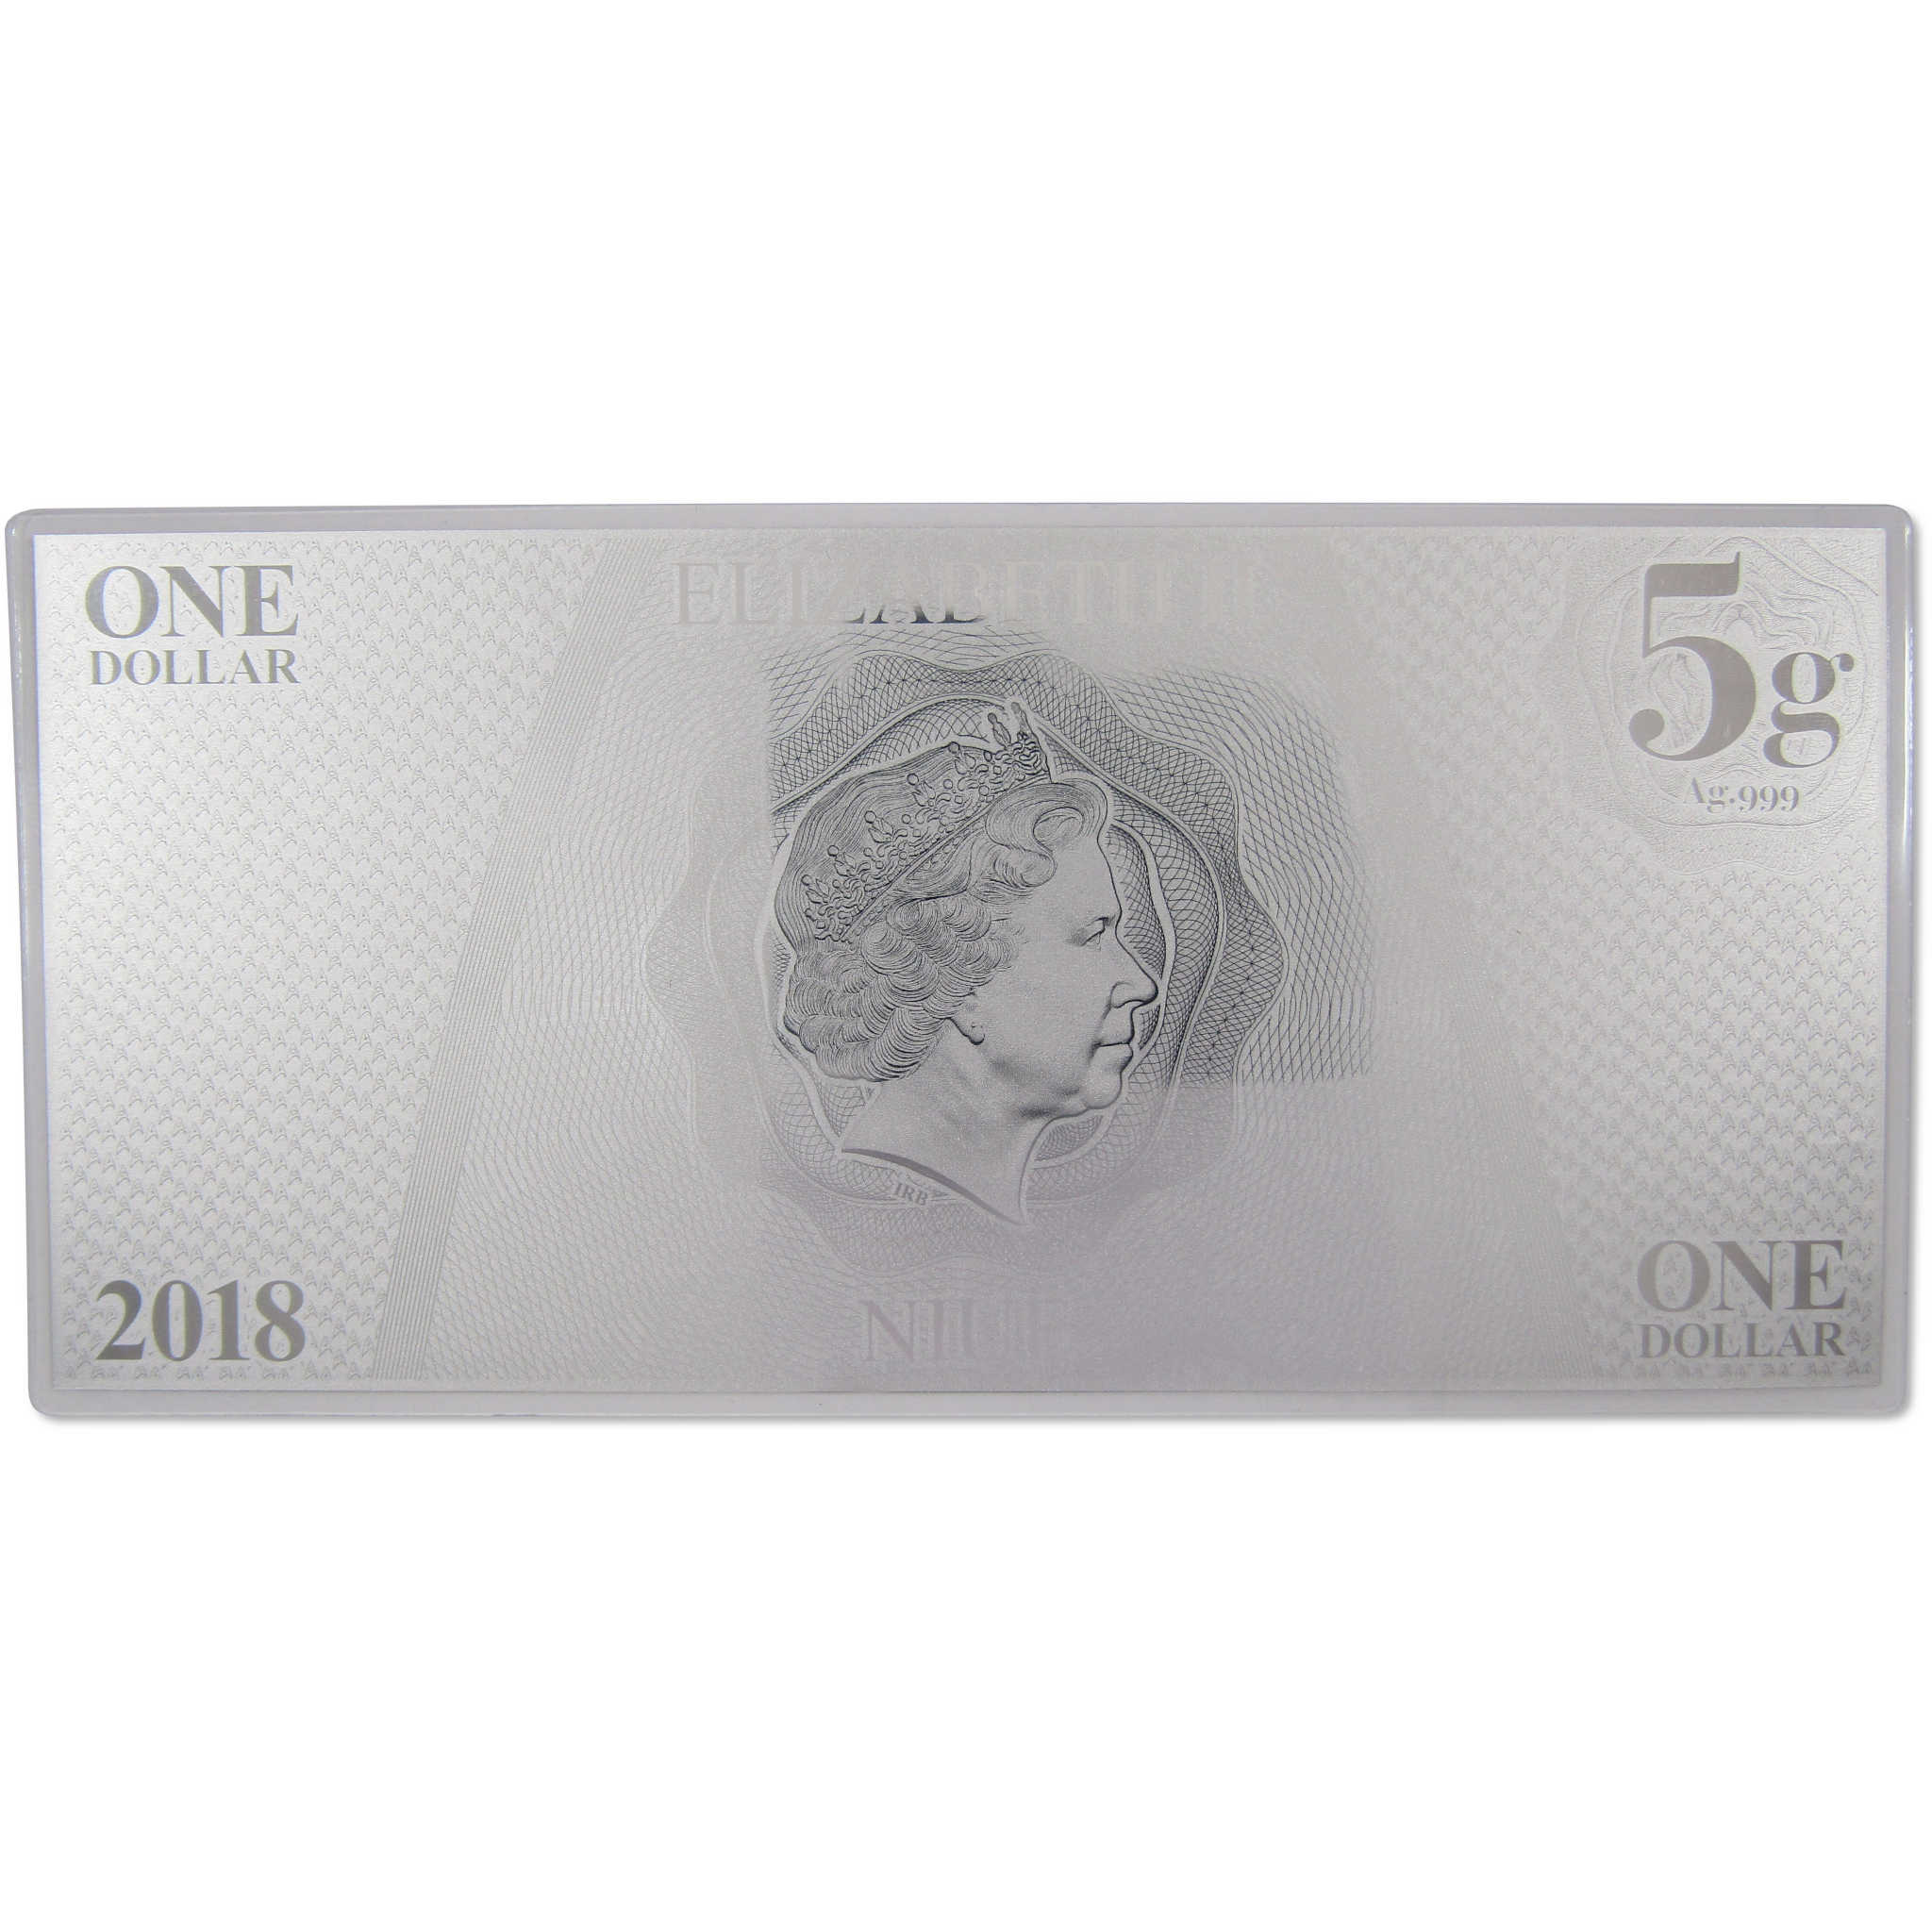 Star Trek Original Series Montgomery Scott 5g .999 Silver $1 Coin Note 2018 Niue